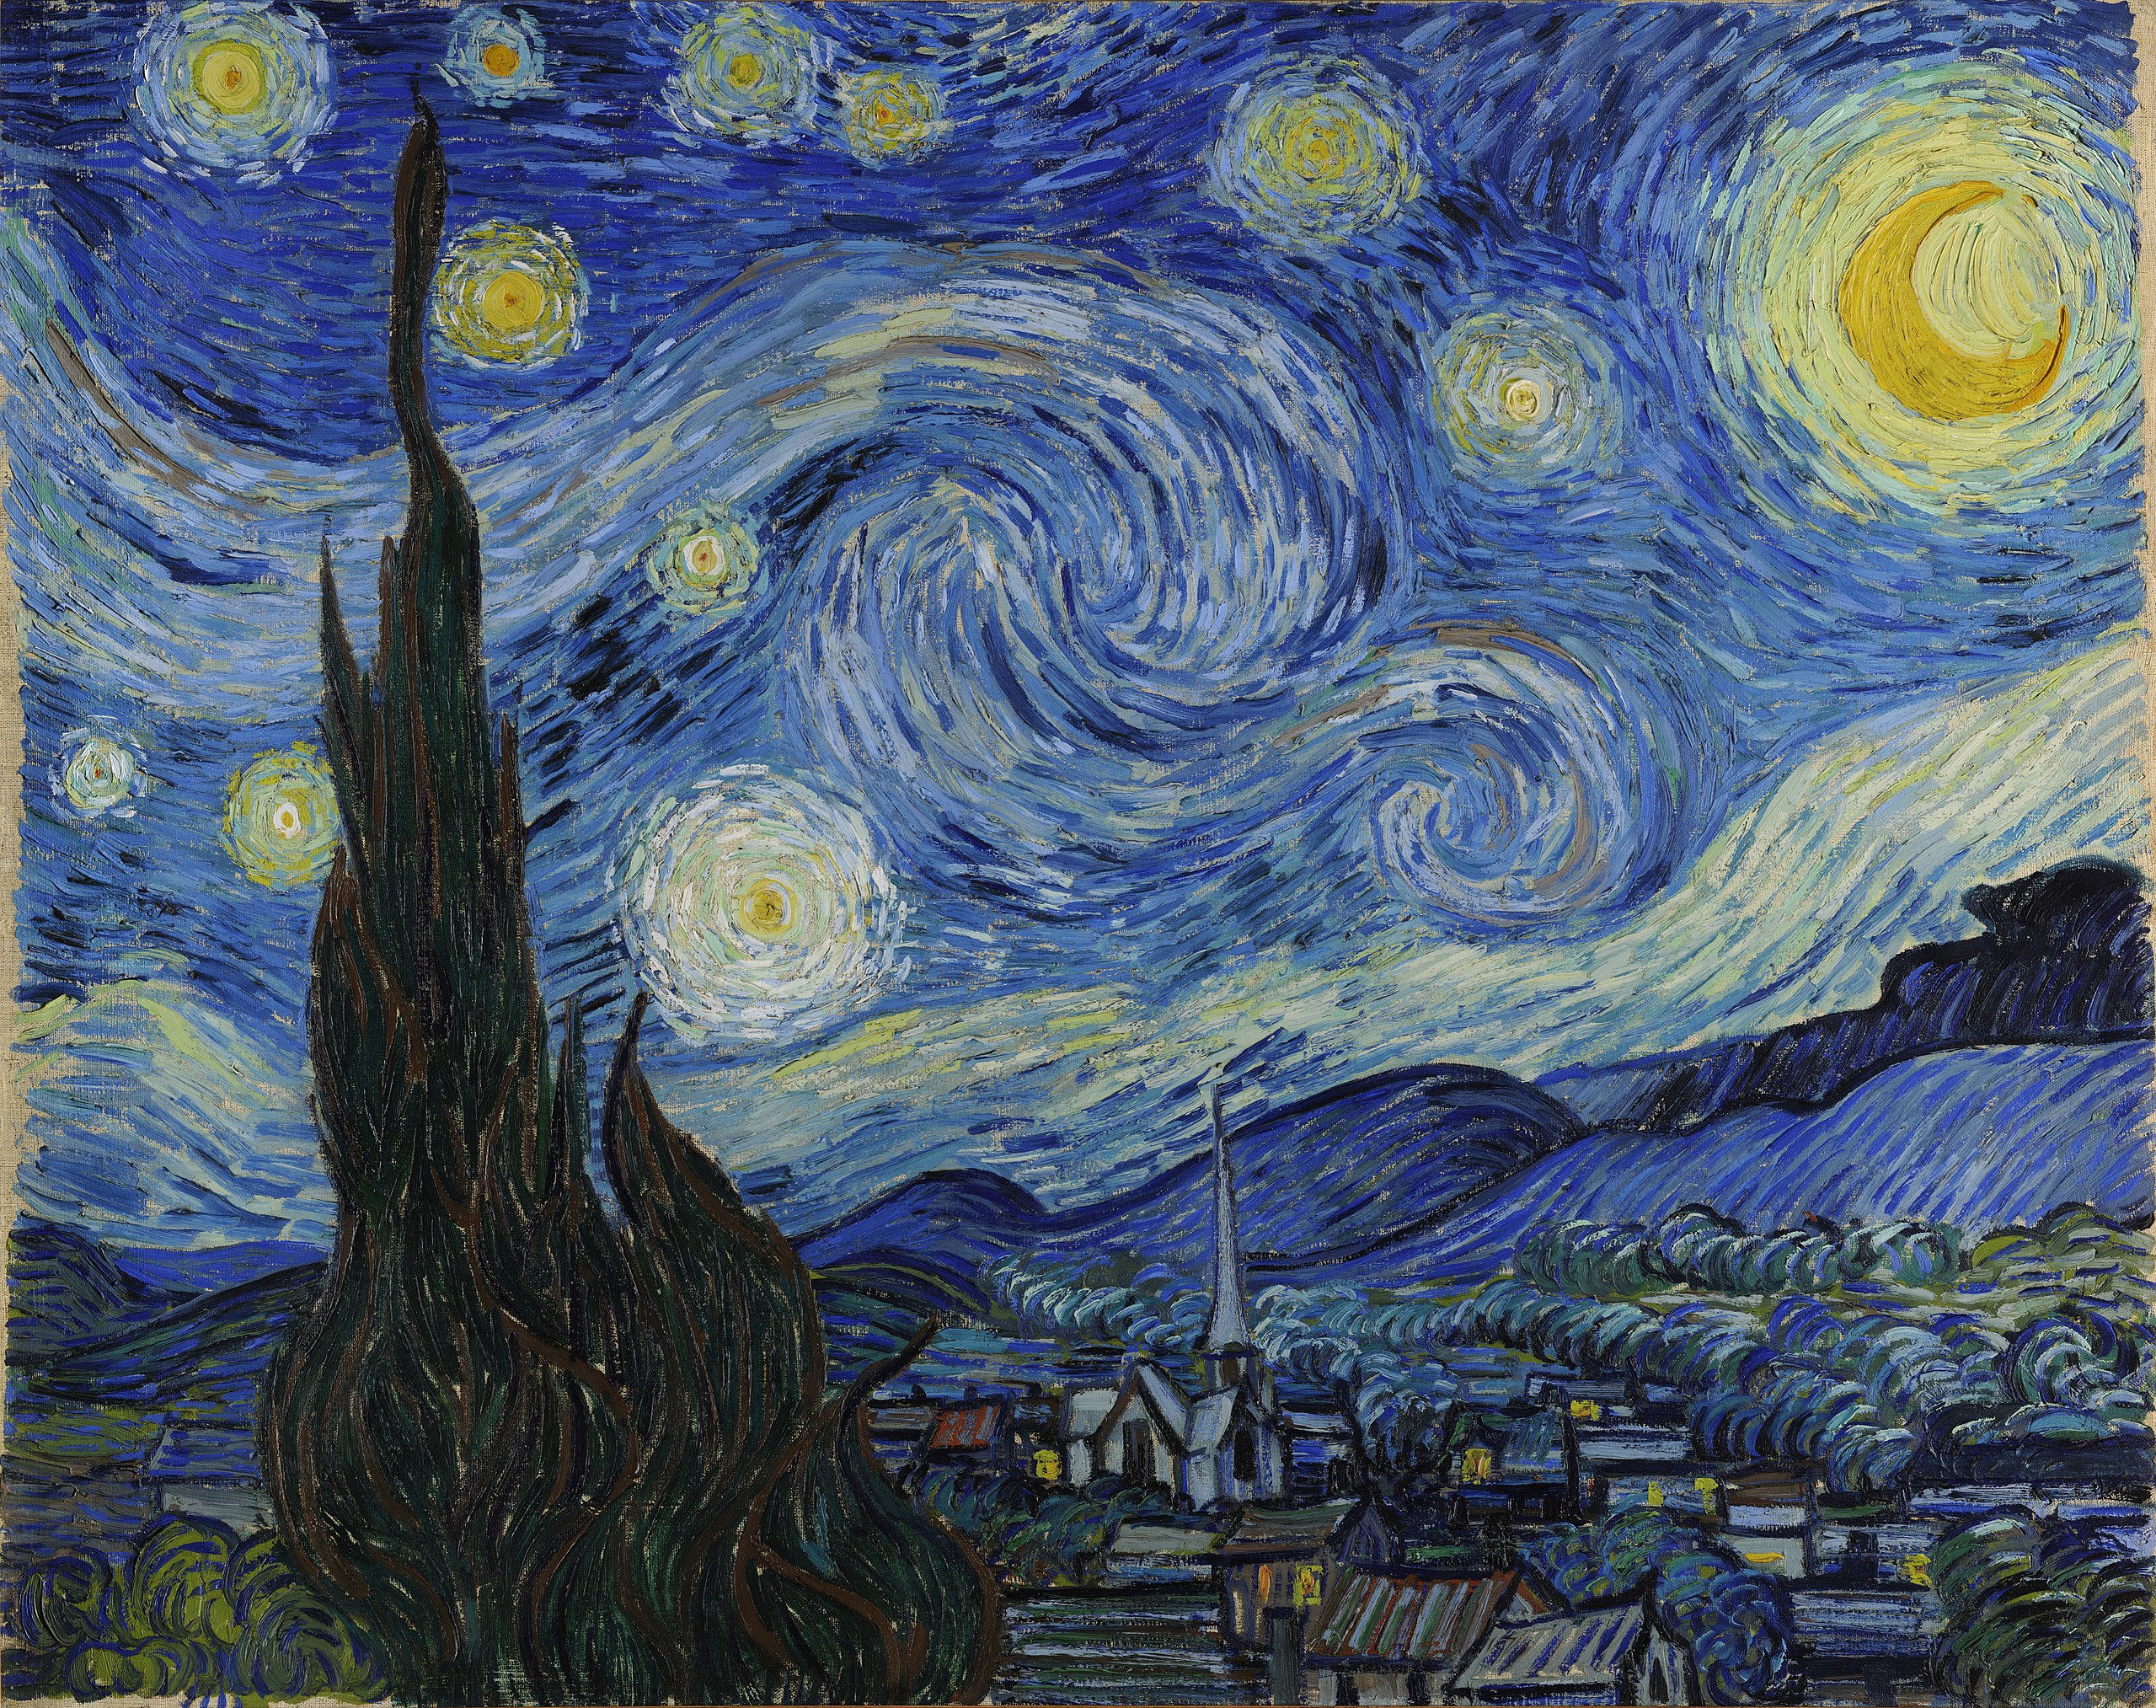 La Nuit étoilée by Vincent van Gogh - 1889 - 73.7 × 92.1 cm Museum of Modern Art